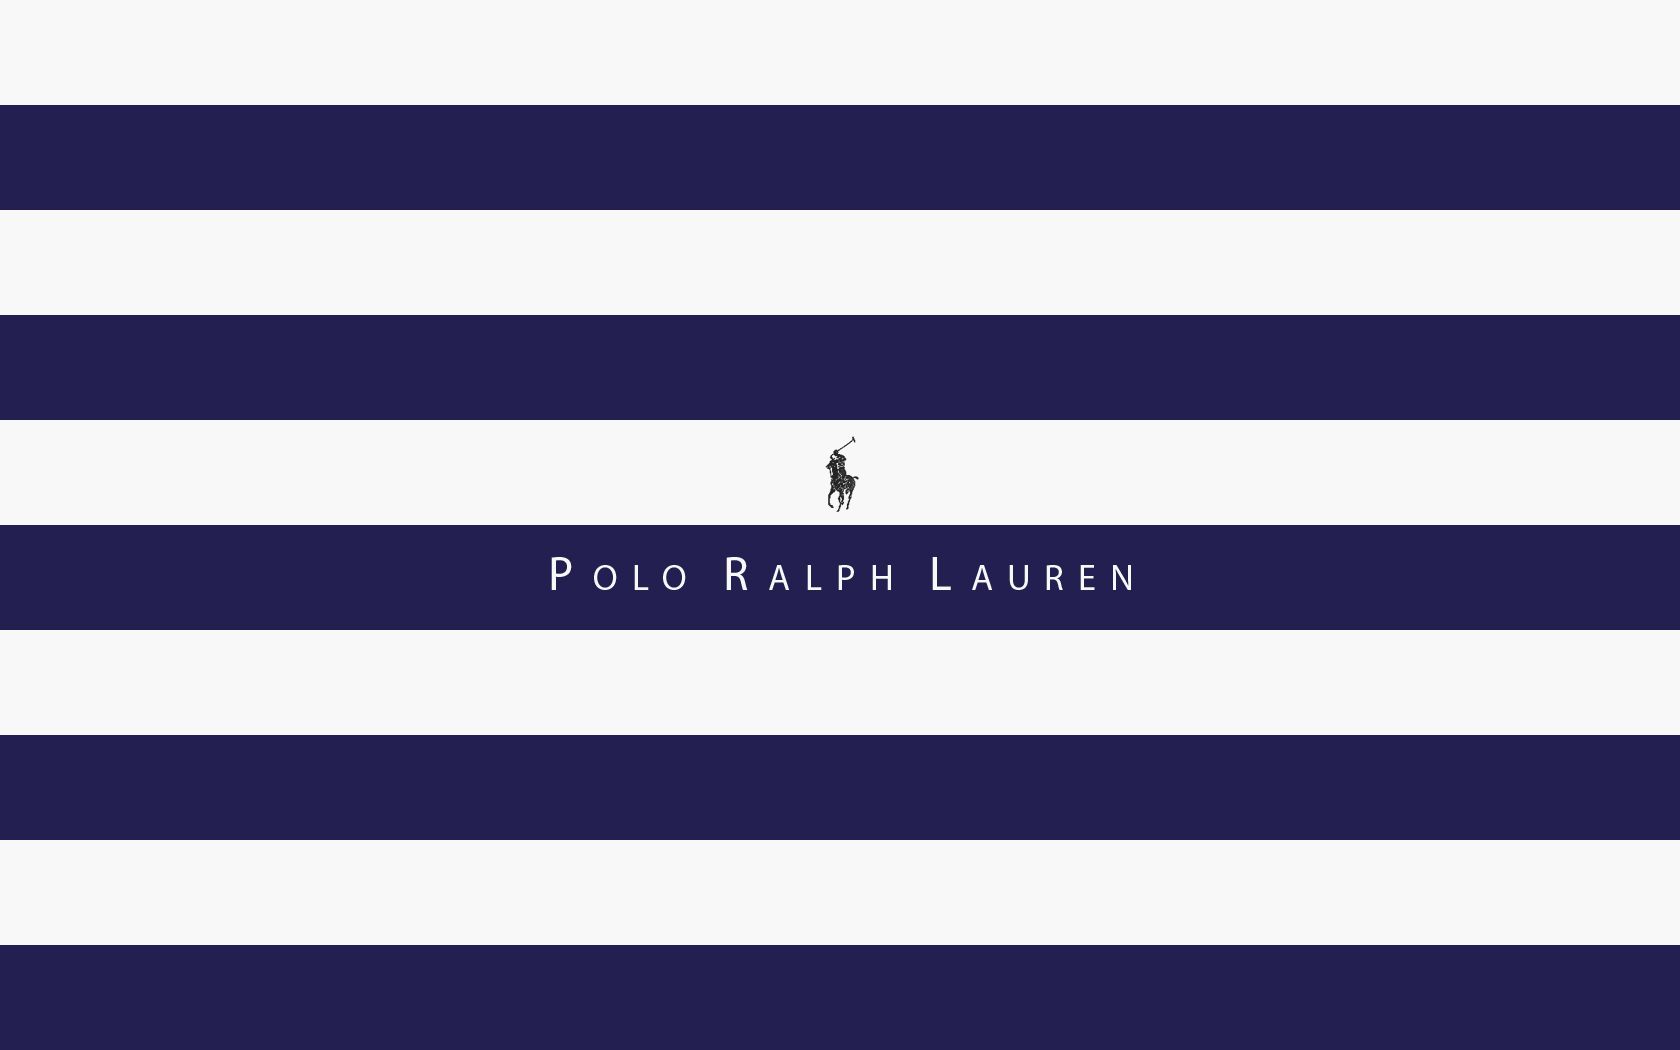 Ralph lauren designer stripe wallpaper 301d lcw18004 768x921